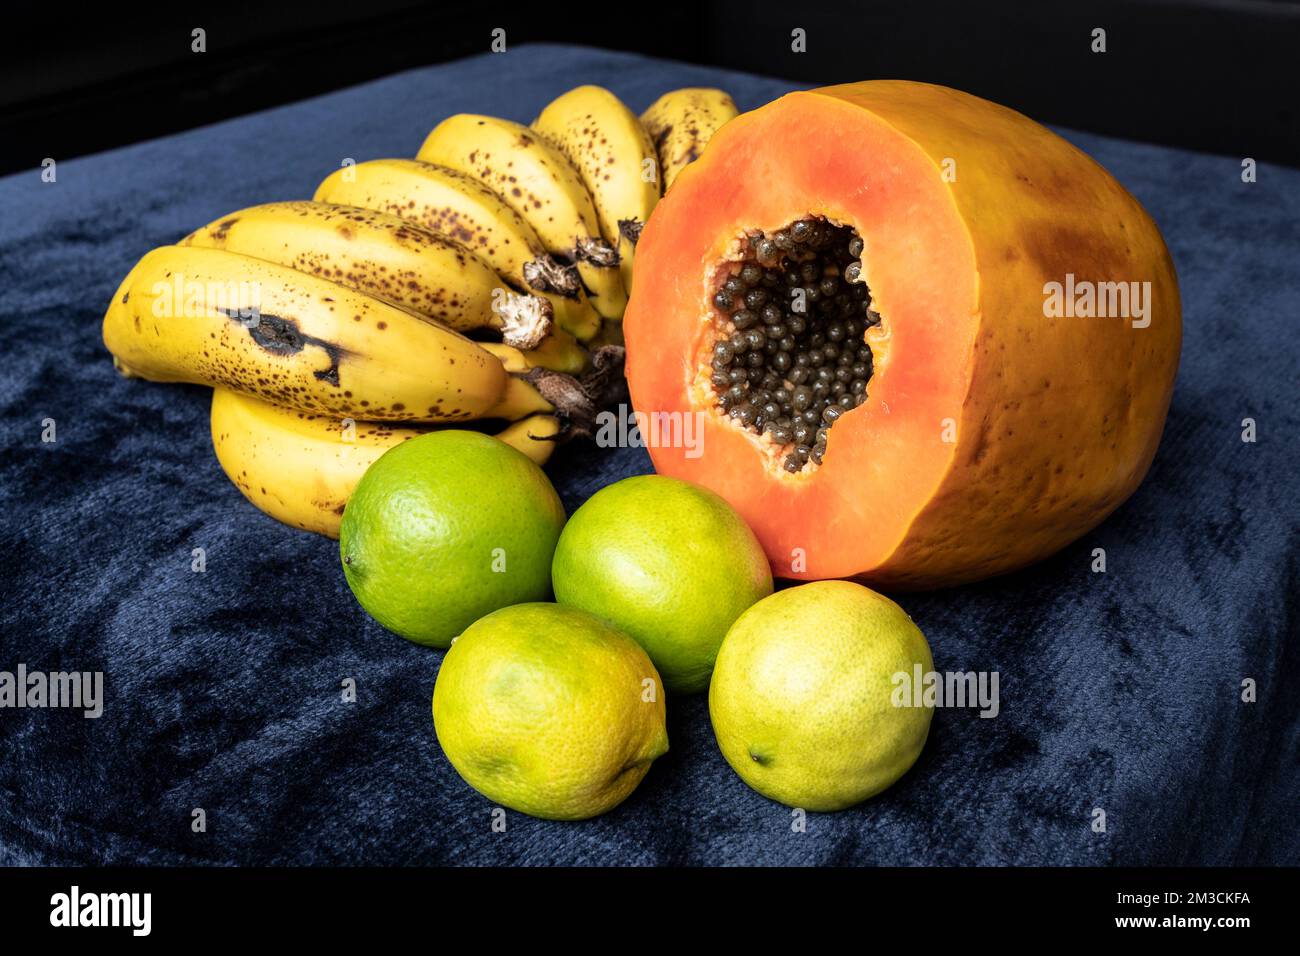 Aus nächster Nähe sehen Sie eine frisch geschnittene Orangenpapaya mit Samen im Inneren, eine Sommersprosse Bananen und drei grüne Zitronen auf blauem marineblauem und schwarzem Hintergrund. F Stockfoto